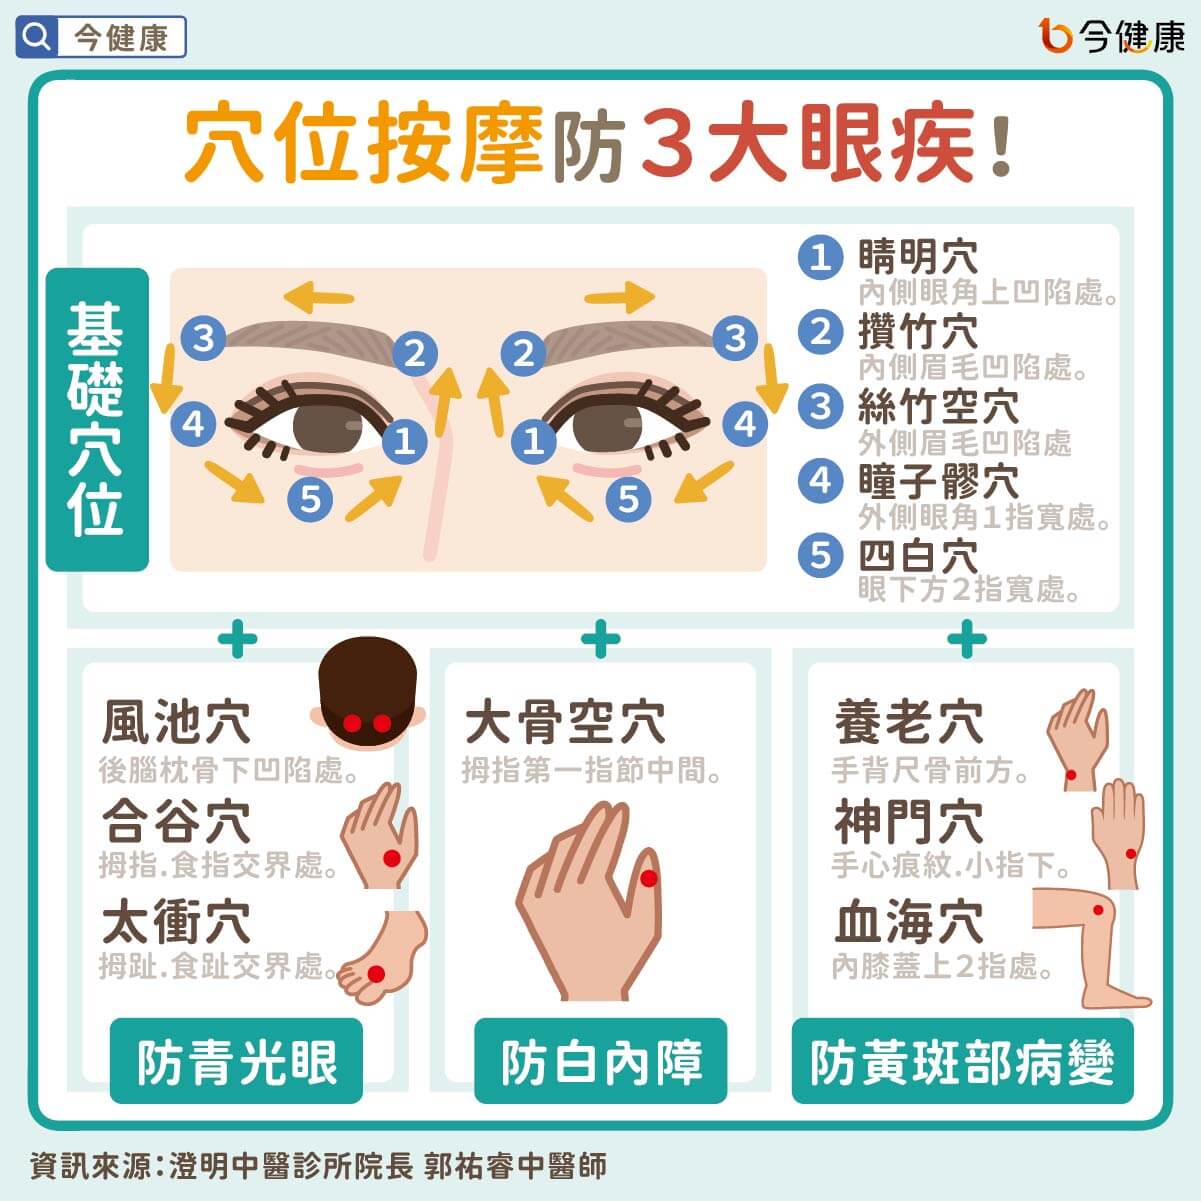 穴位按摩防３大眼疾！中醫治青光眼、白內障、黃斑部病變。